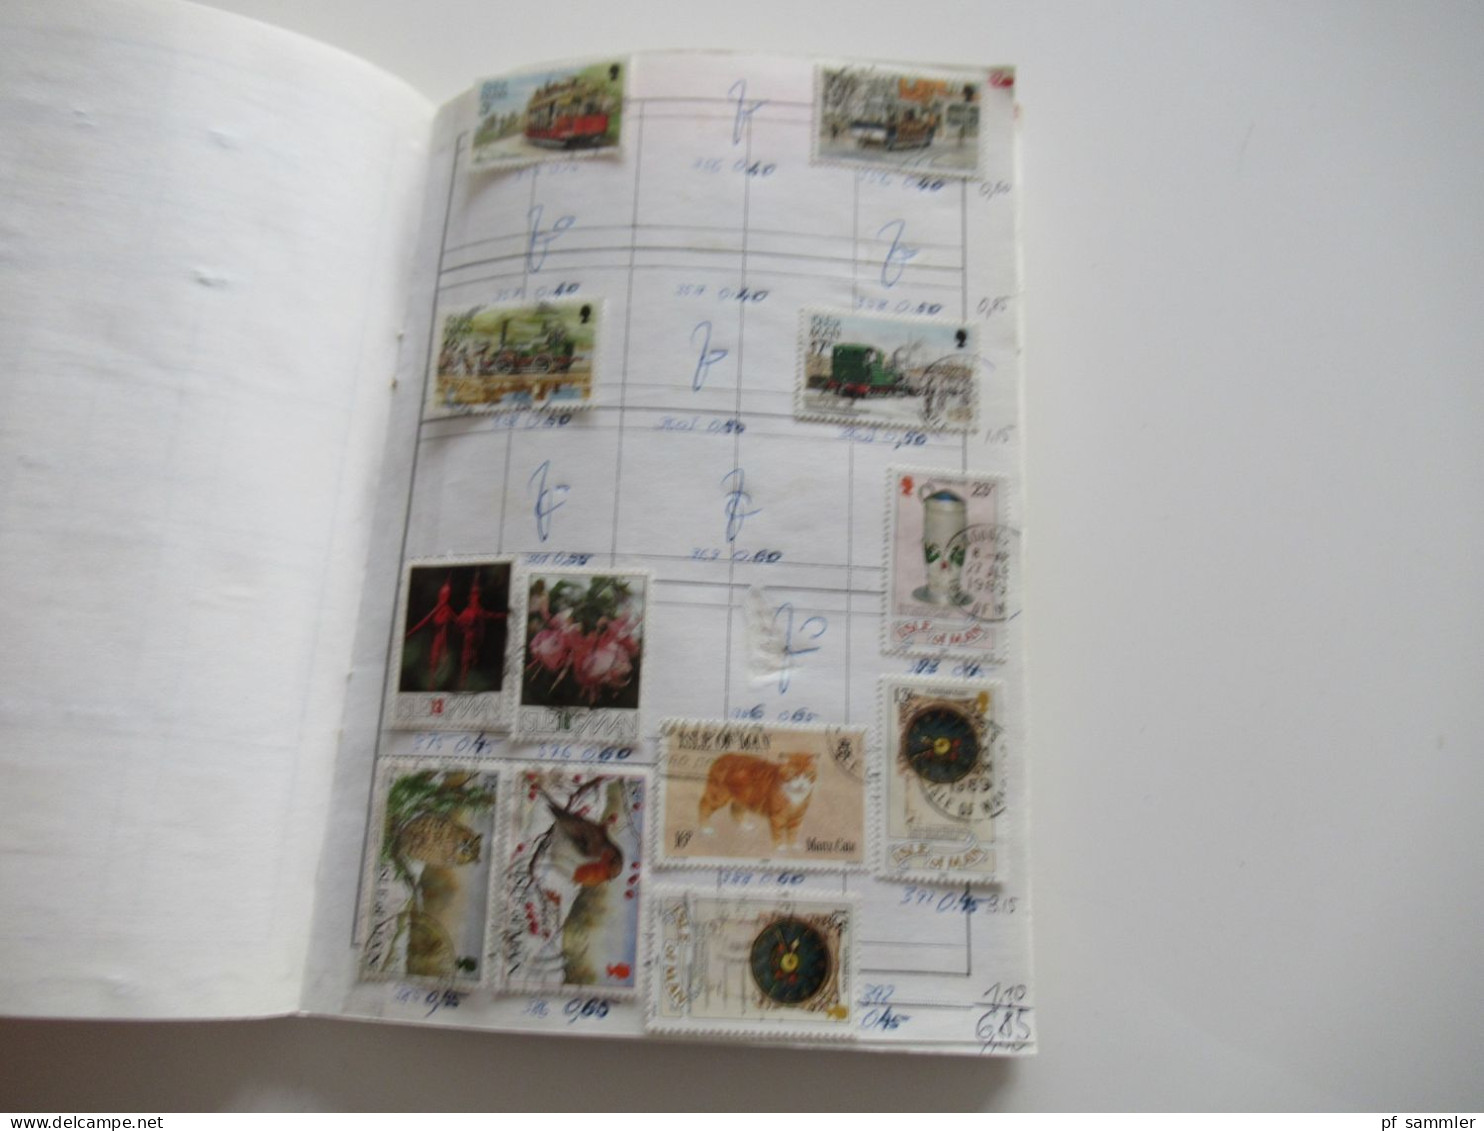 Sammlung / interessantes Auswahlheft Europa Britische Kanalinseln - ca. 1995 massenweise gestempelte Marken / Fundgrube!